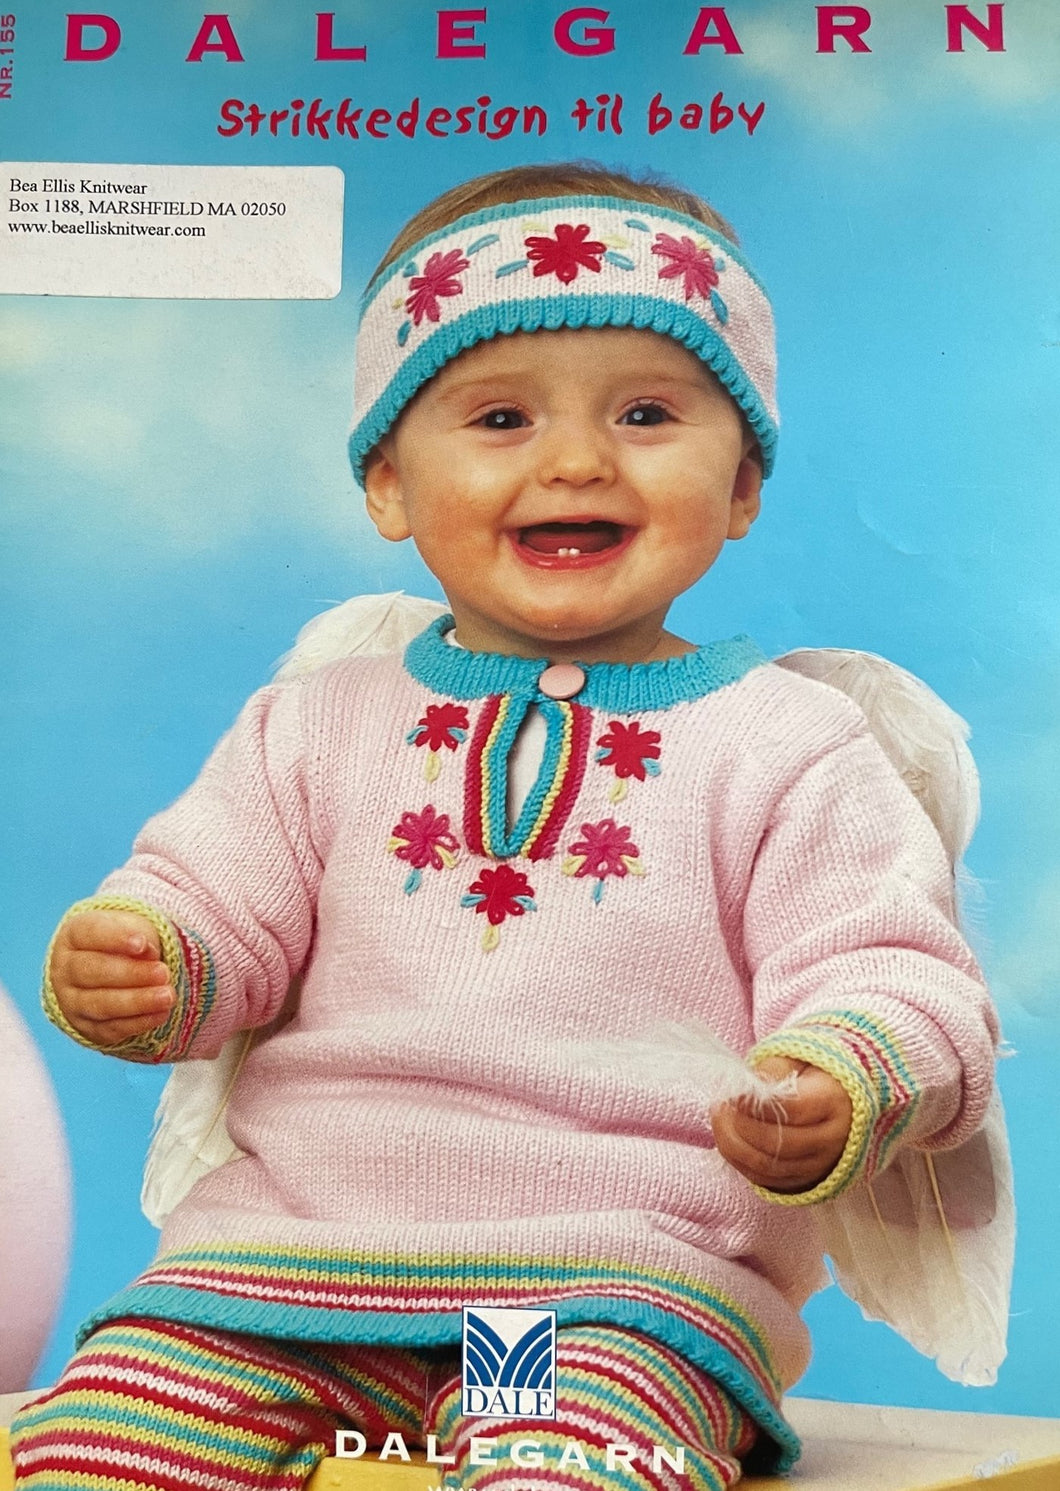 Dale of Norway -Strikkedesign til baby #155